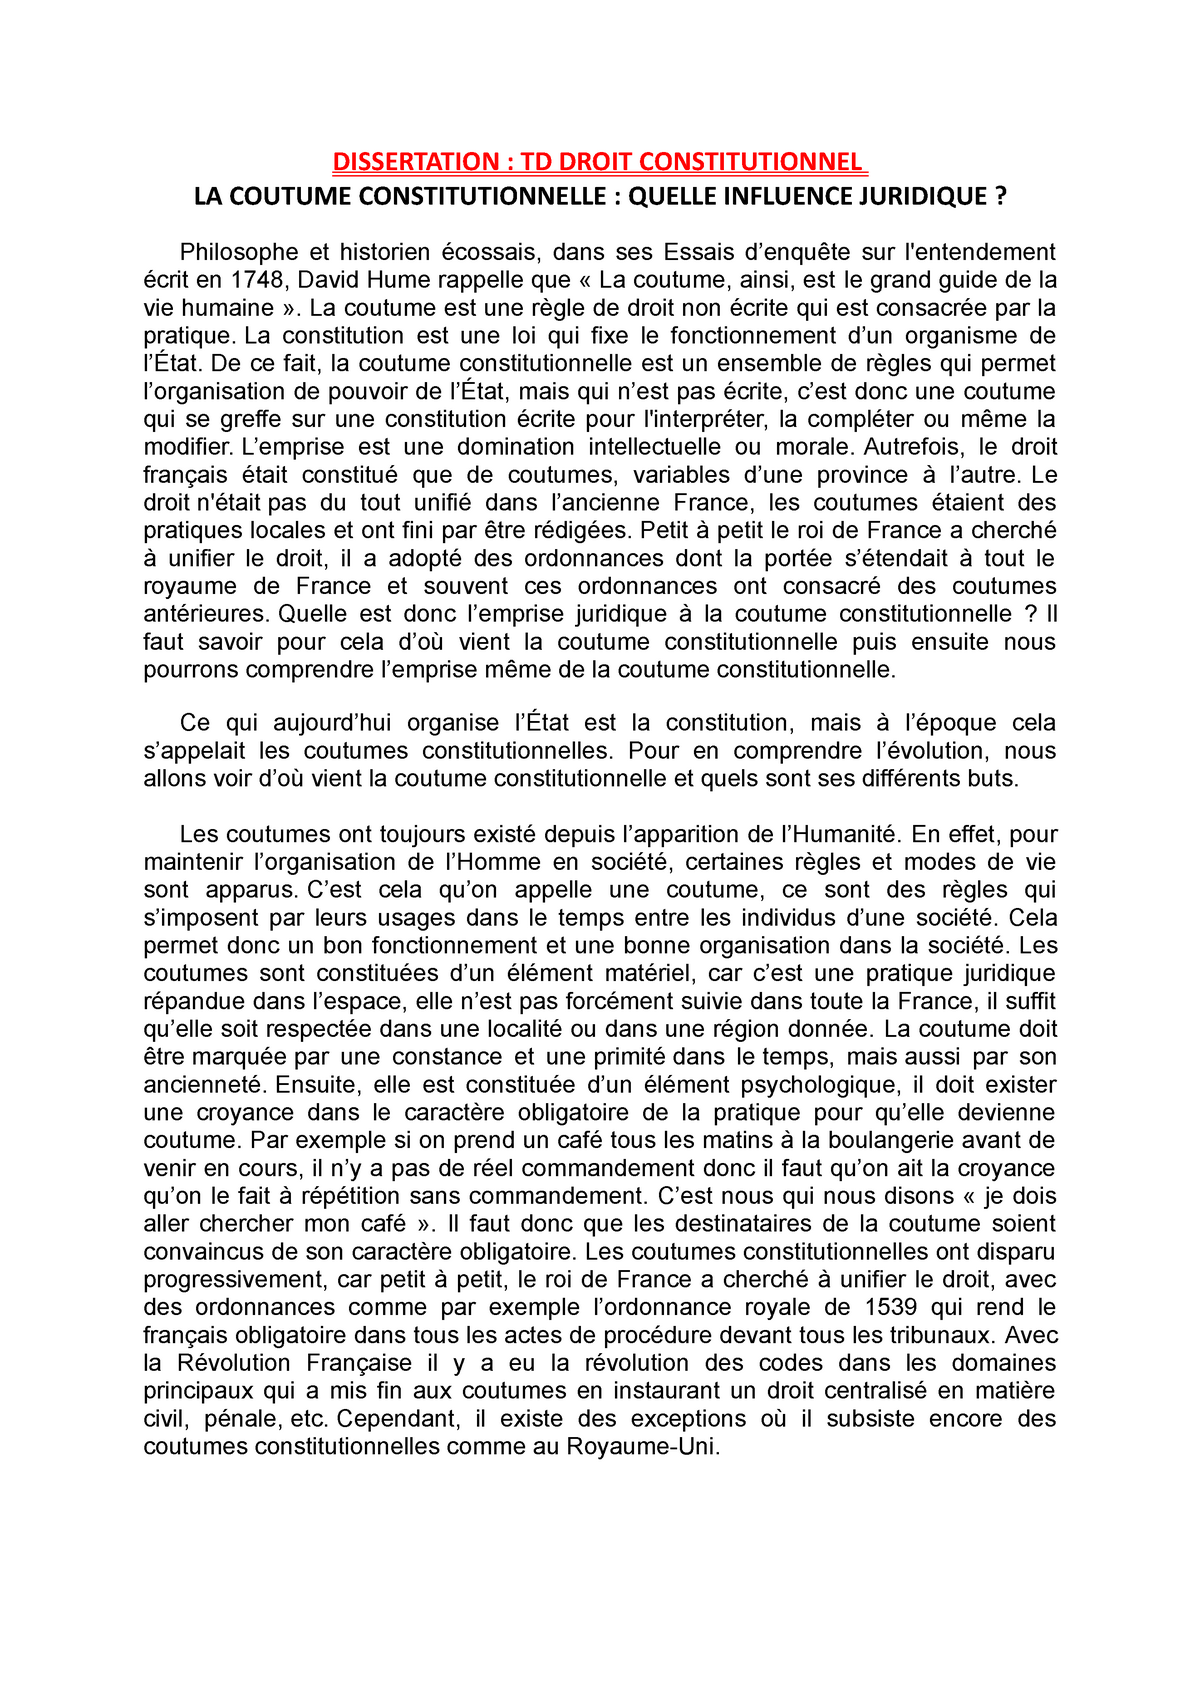 Dissertation n°1 TD droit consti corrigé  DISSERTATION  TD DROIT